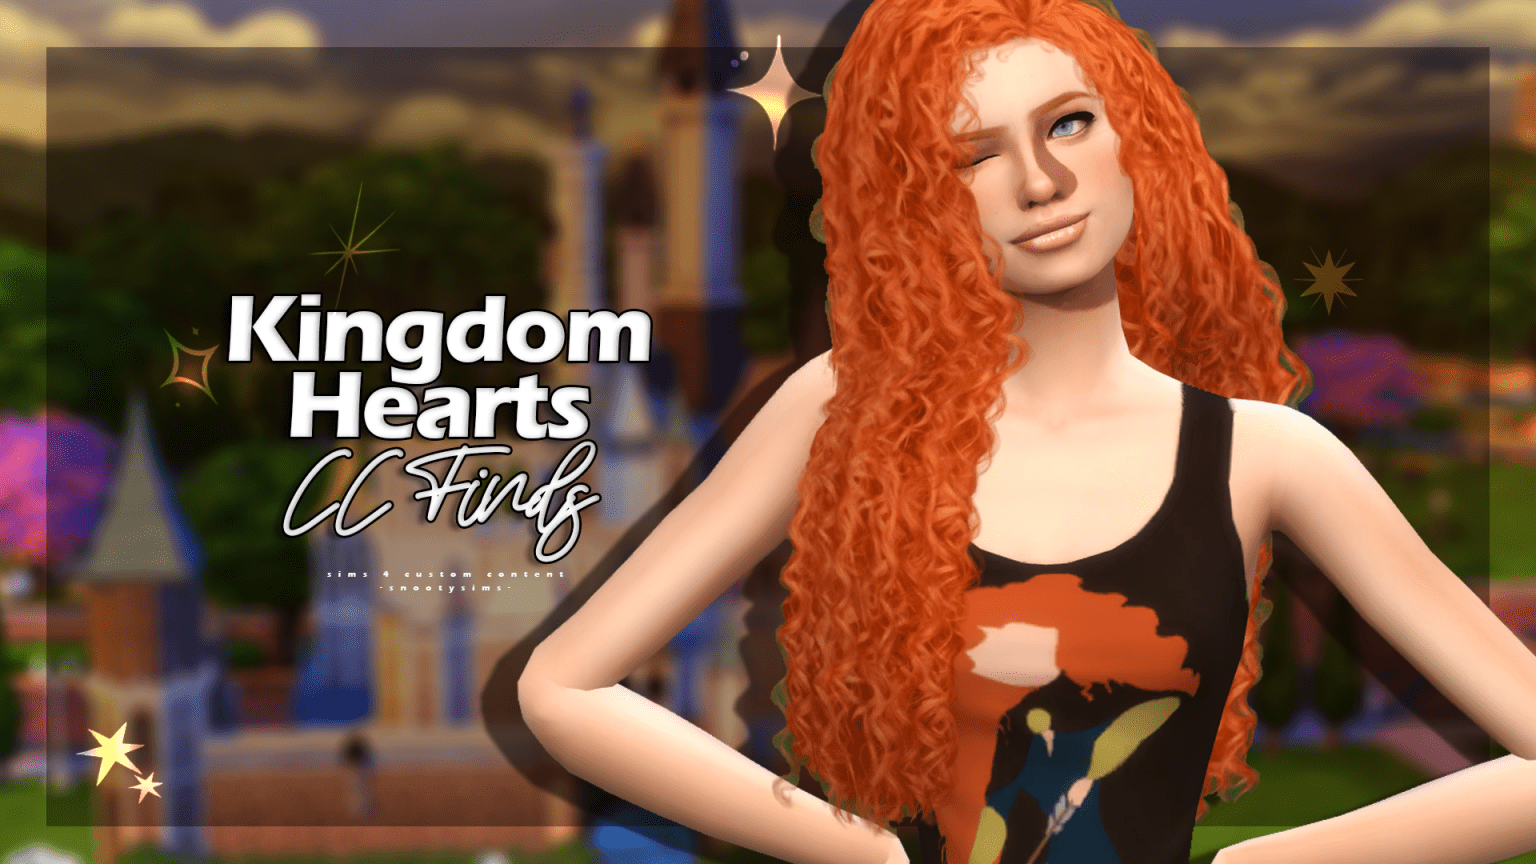 sims 4 kingdom hearts wall art cc